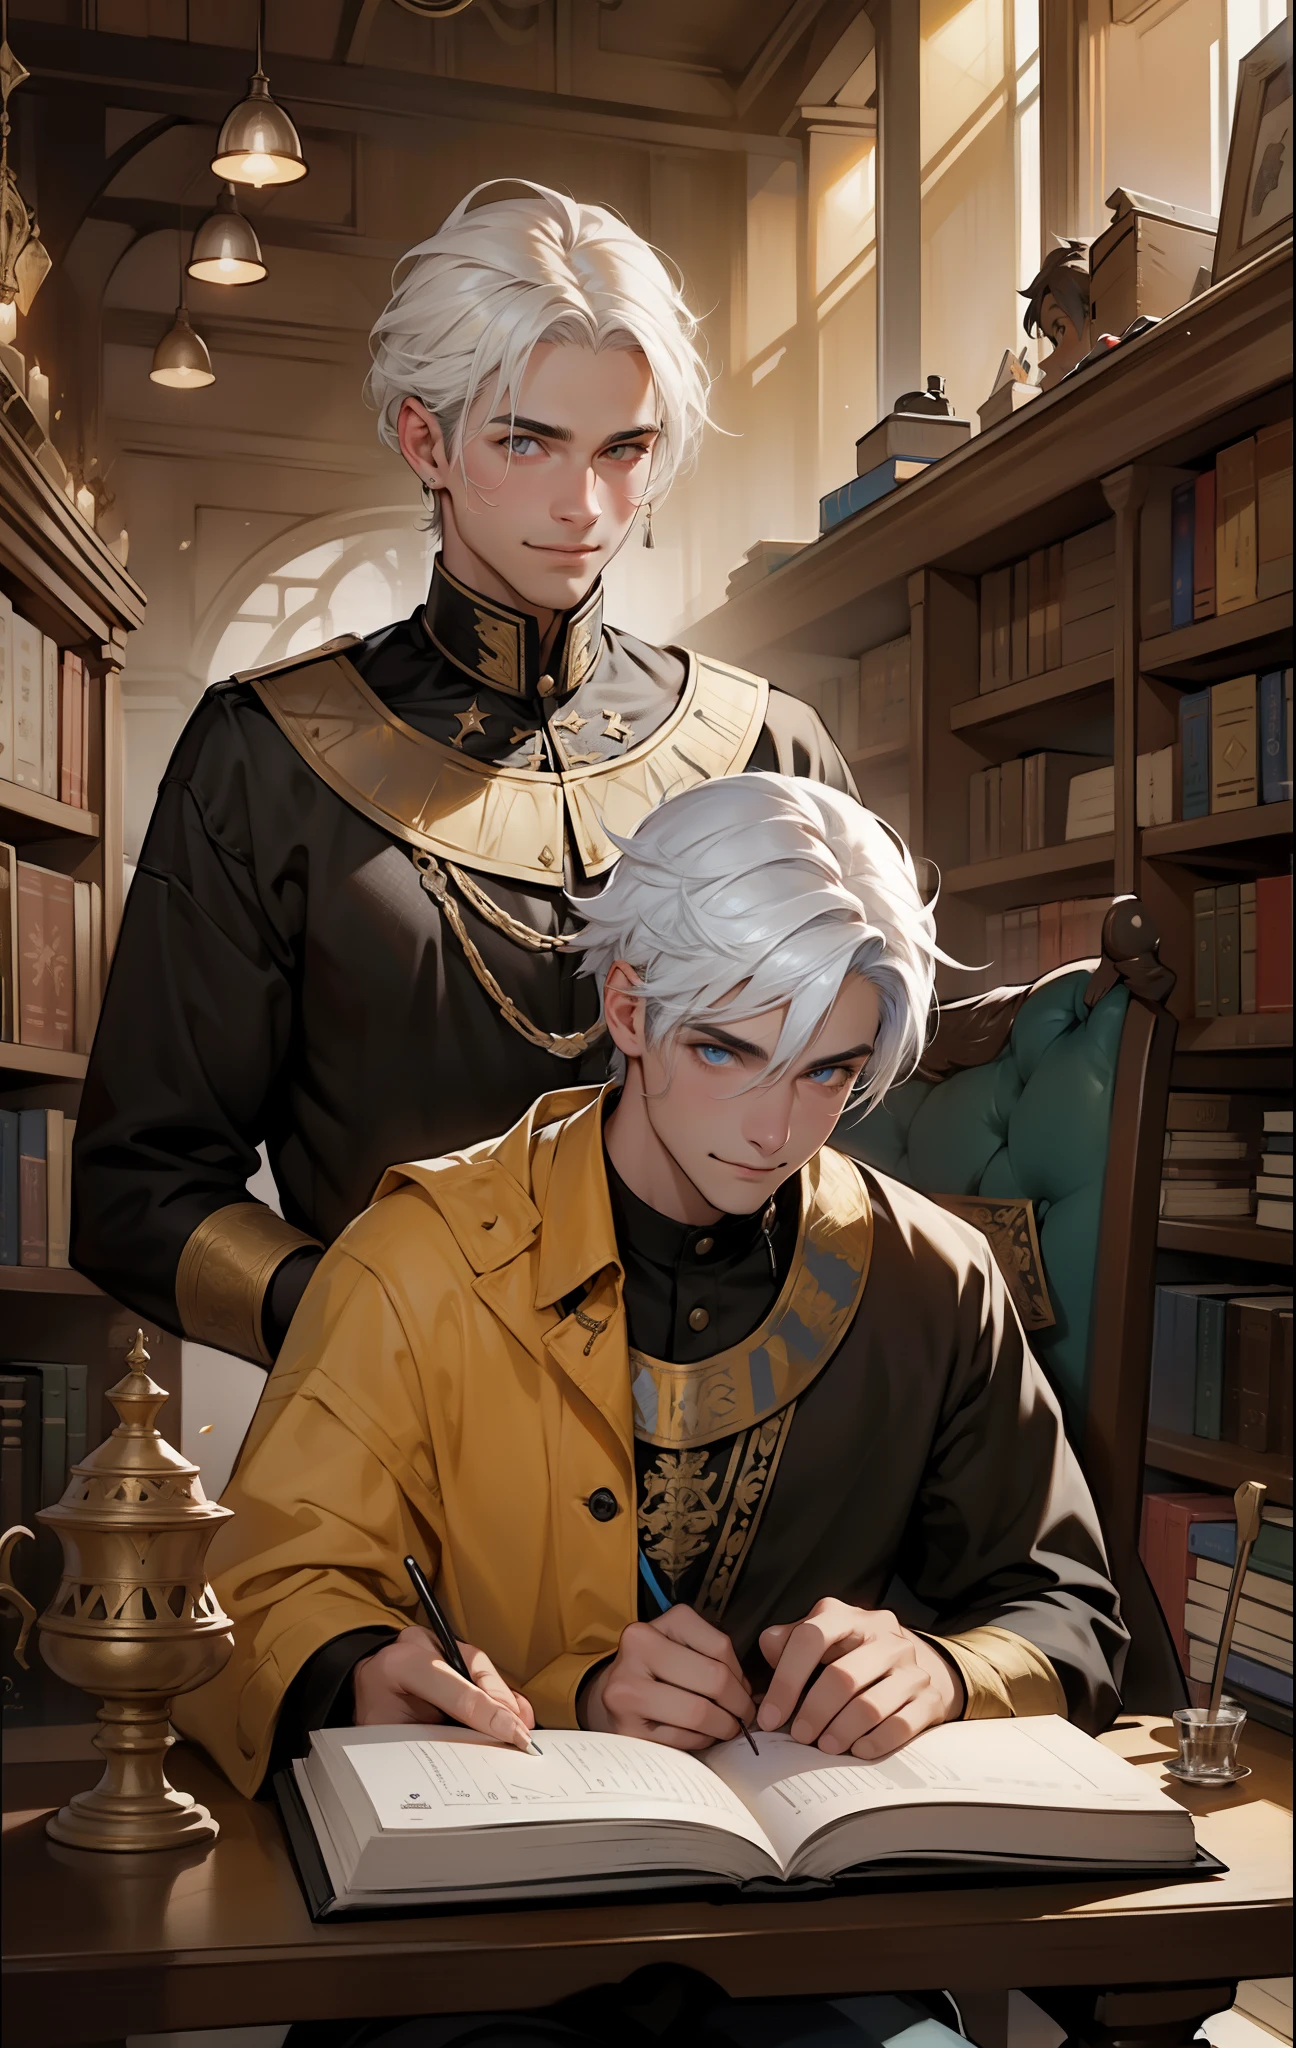 Es gibt zwei Männer, einer steht mit einem bösen Lächeln und Wahnsinn da., Einer sitzt und liest ein Buch, weißes Haar, gelbe Augen